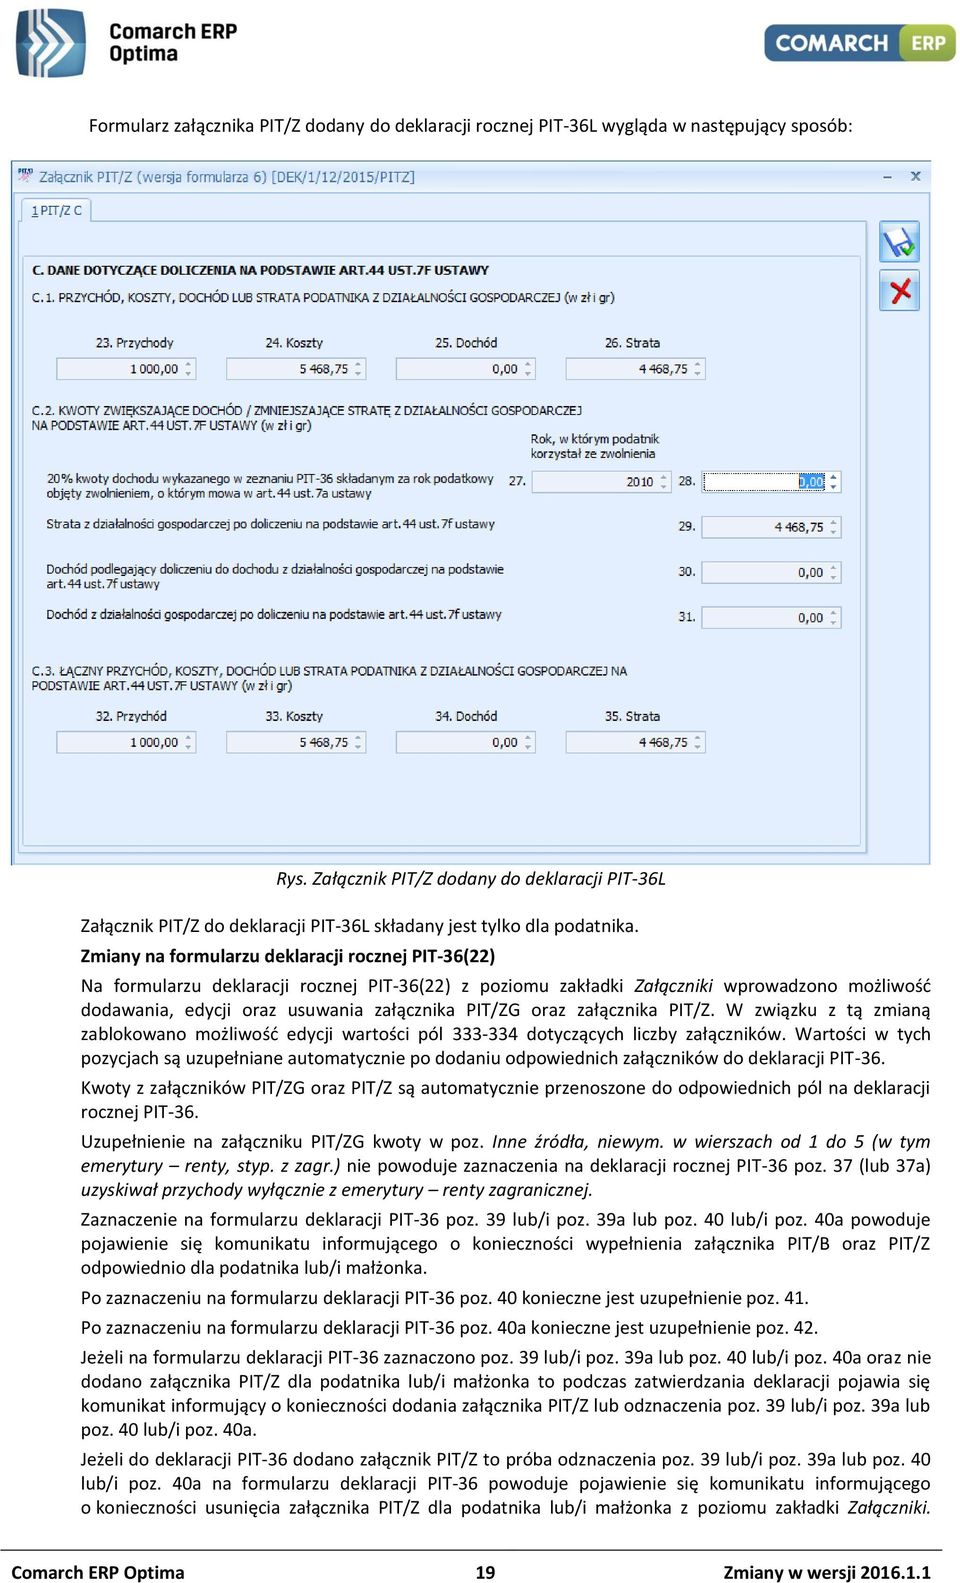 Zmiany na formularzu deklaracji rocznej PIT-36(22) Na formularzu deklaracji rocznej PIT-36(22) z poziomu zakładki Załączniki wprowadzono możliwość dodawania, edycji oraz usuwania załącznika PIT/ZG